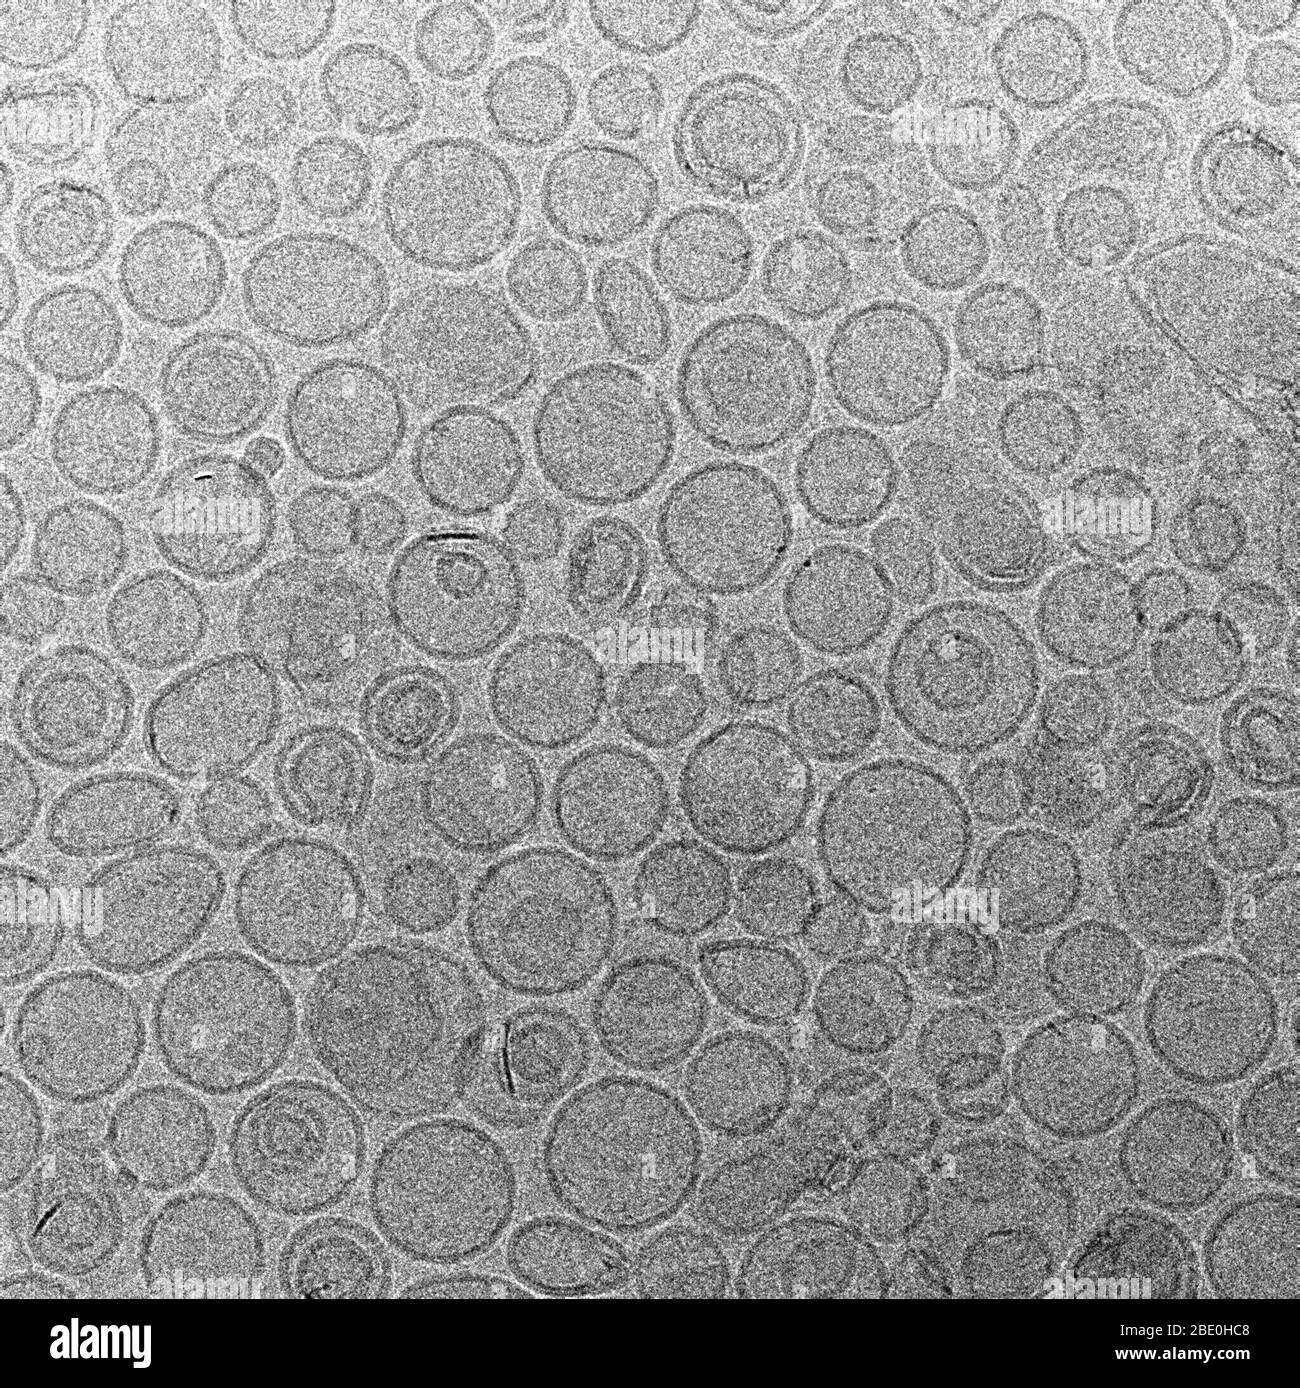 Kryo-EM-Bild von Liposomen, künstlich präparierten Vesikeln, die aus einer Lipiddoppelschicht bestehen. Sie können als Träger für die Verabreichung von Nährstoffen oder Arzneimitteln verwendet werden. Vergrößerung unbekannt. Stockfoto